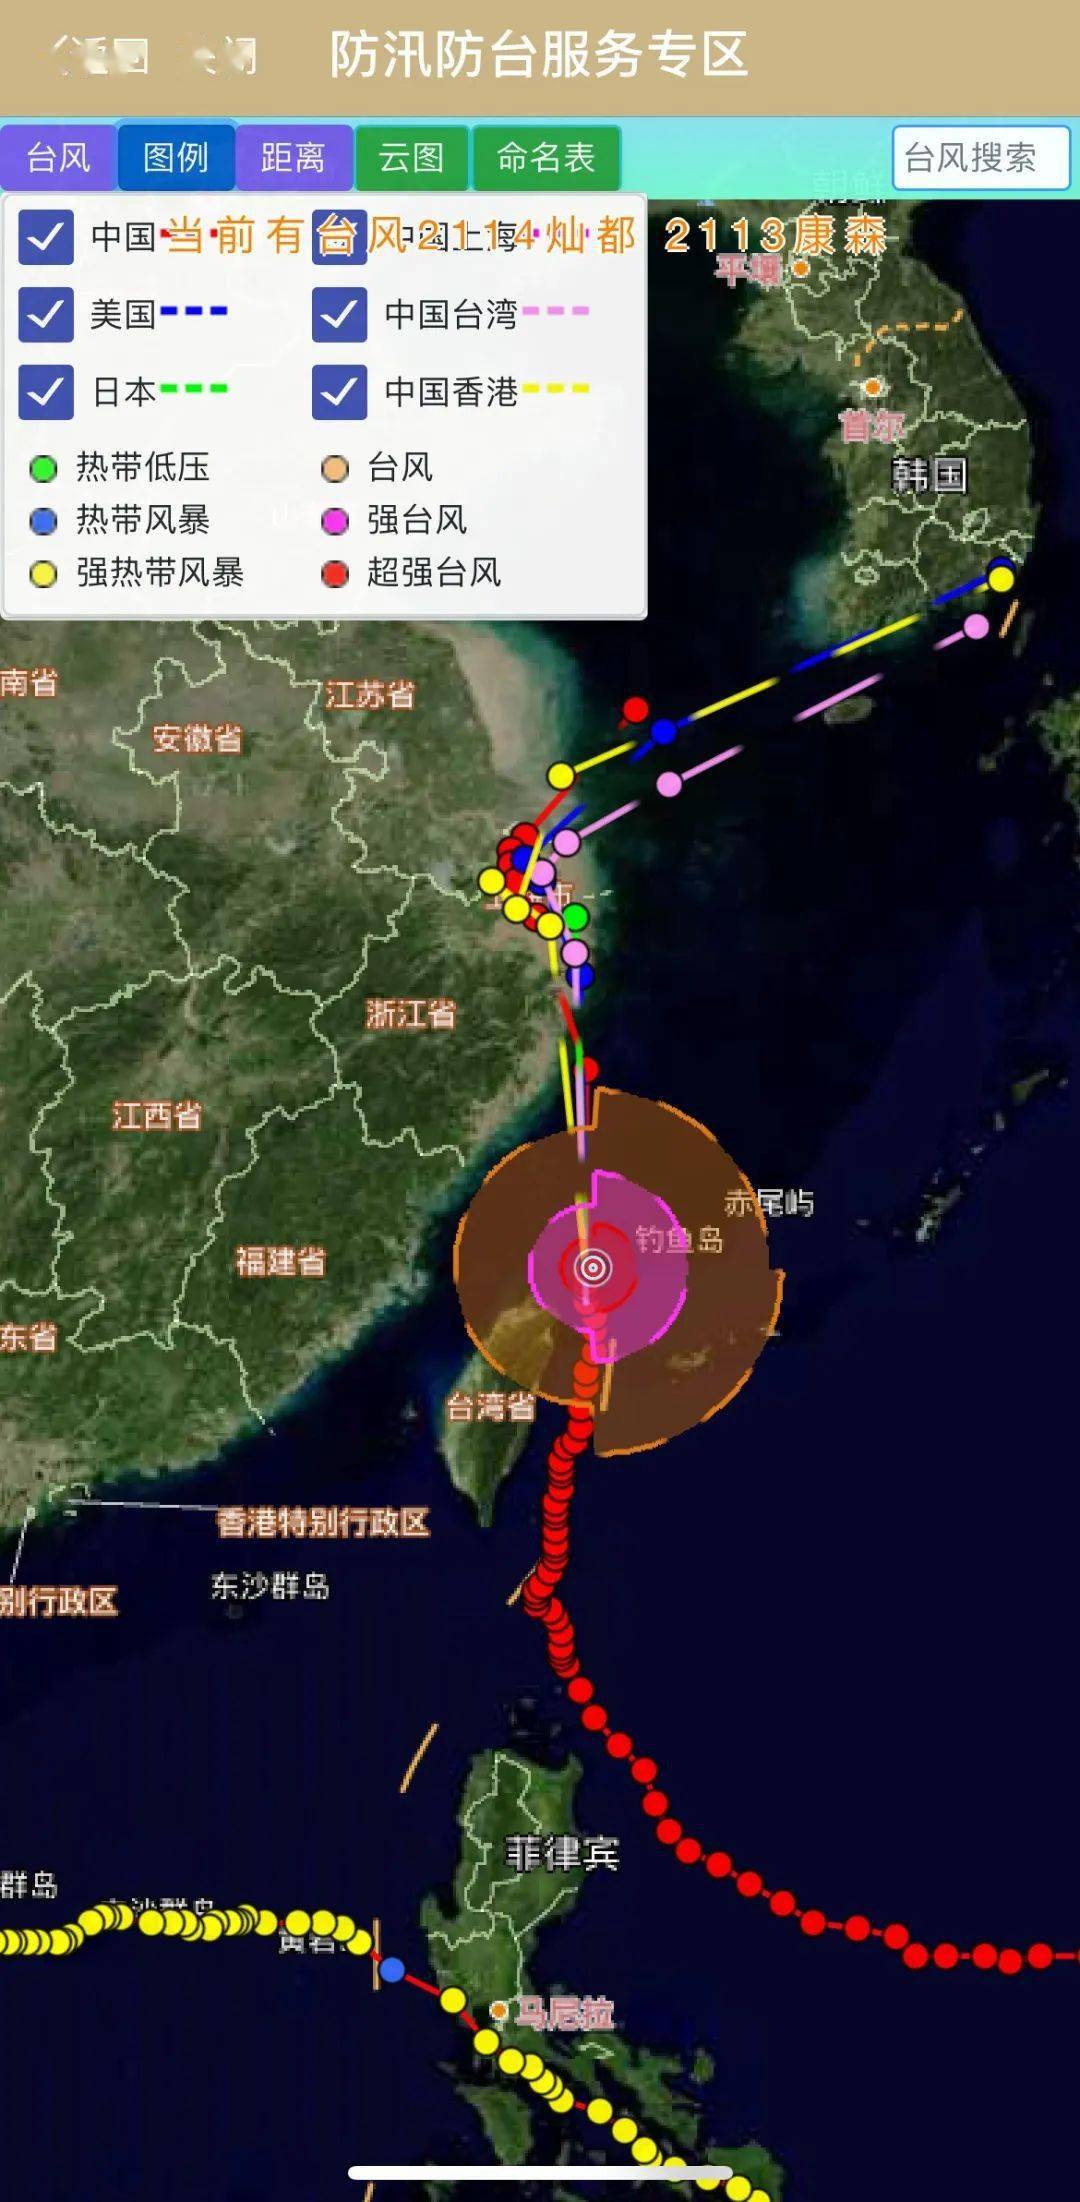 最新路径图预计明天傍晚到夜间在上海南部二次登陆台风预警升级为